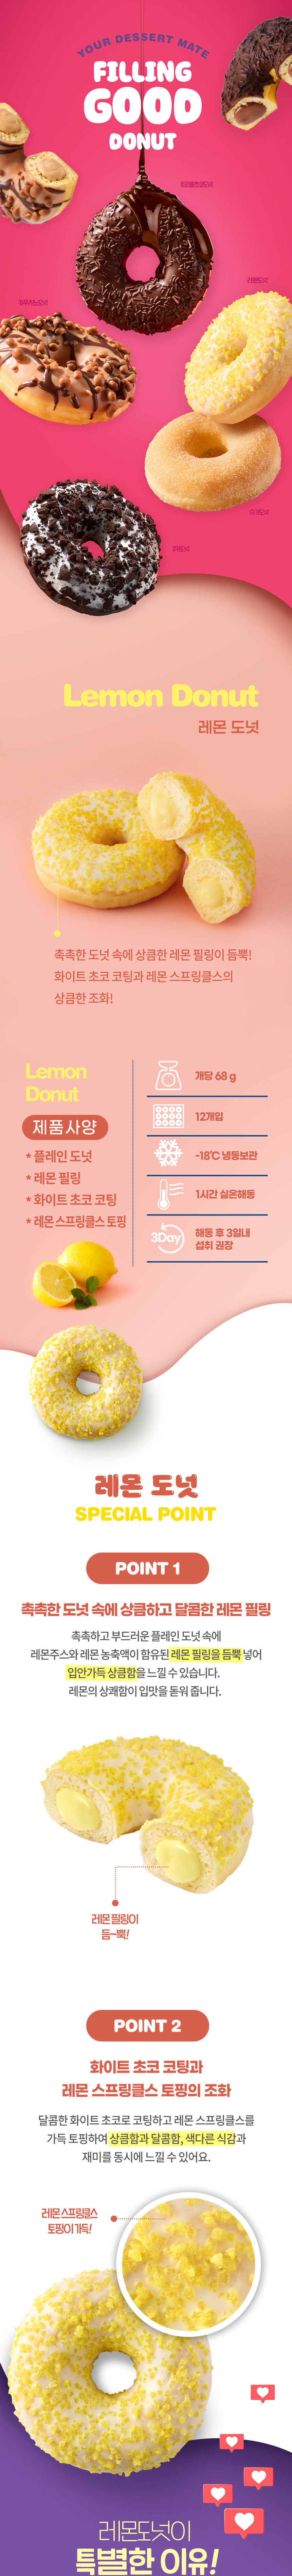 Filing_Good_Donut_Lemon_01